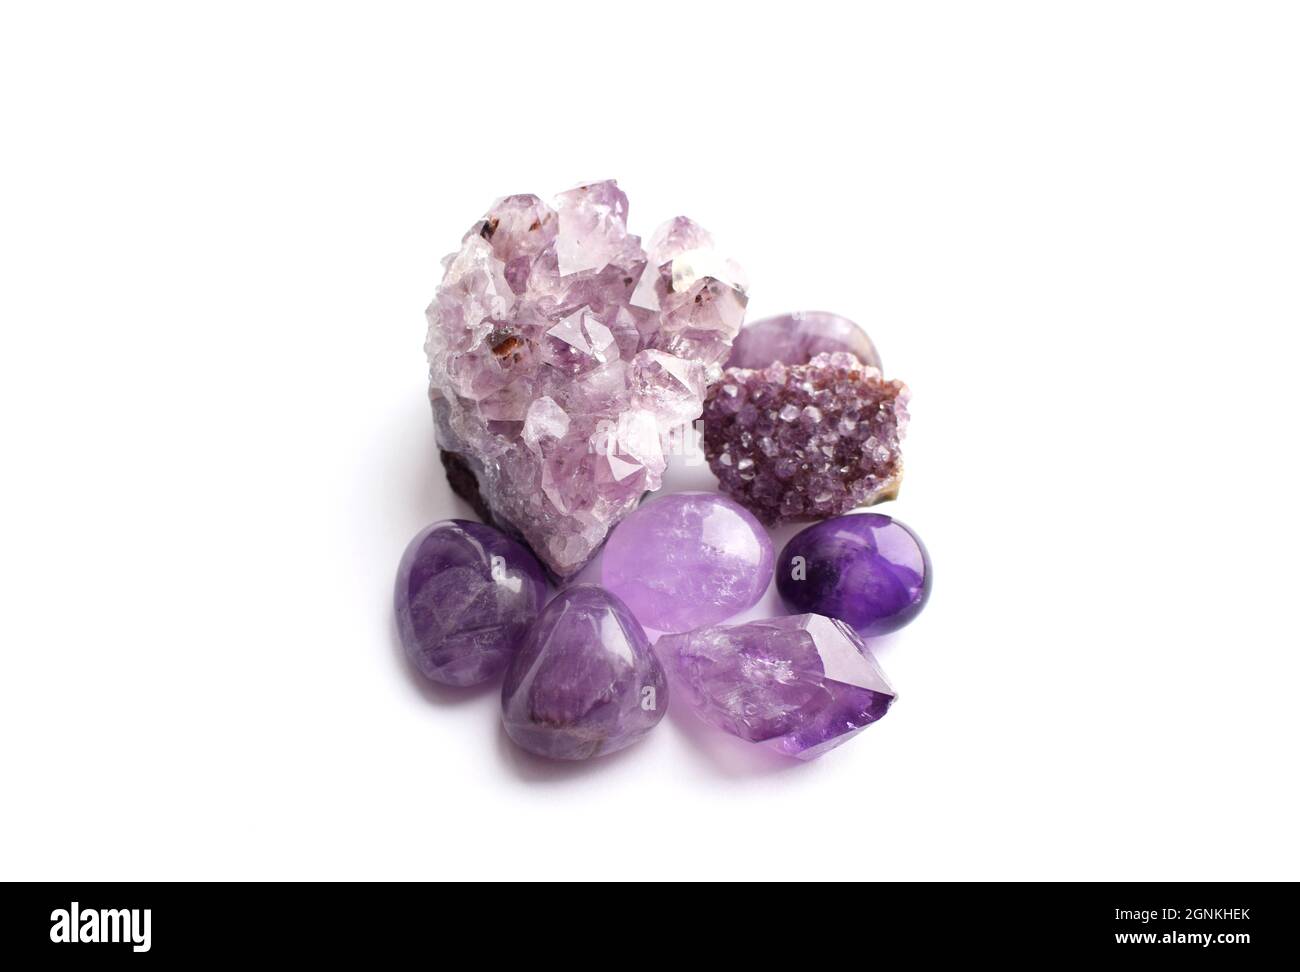 Wunderschöne Edelsteine und Druse aus natürlichem purpurfarbenem Amethyst auf weißem Grund. Große Kristalle aus Halbedelsteinen. Stockfoto